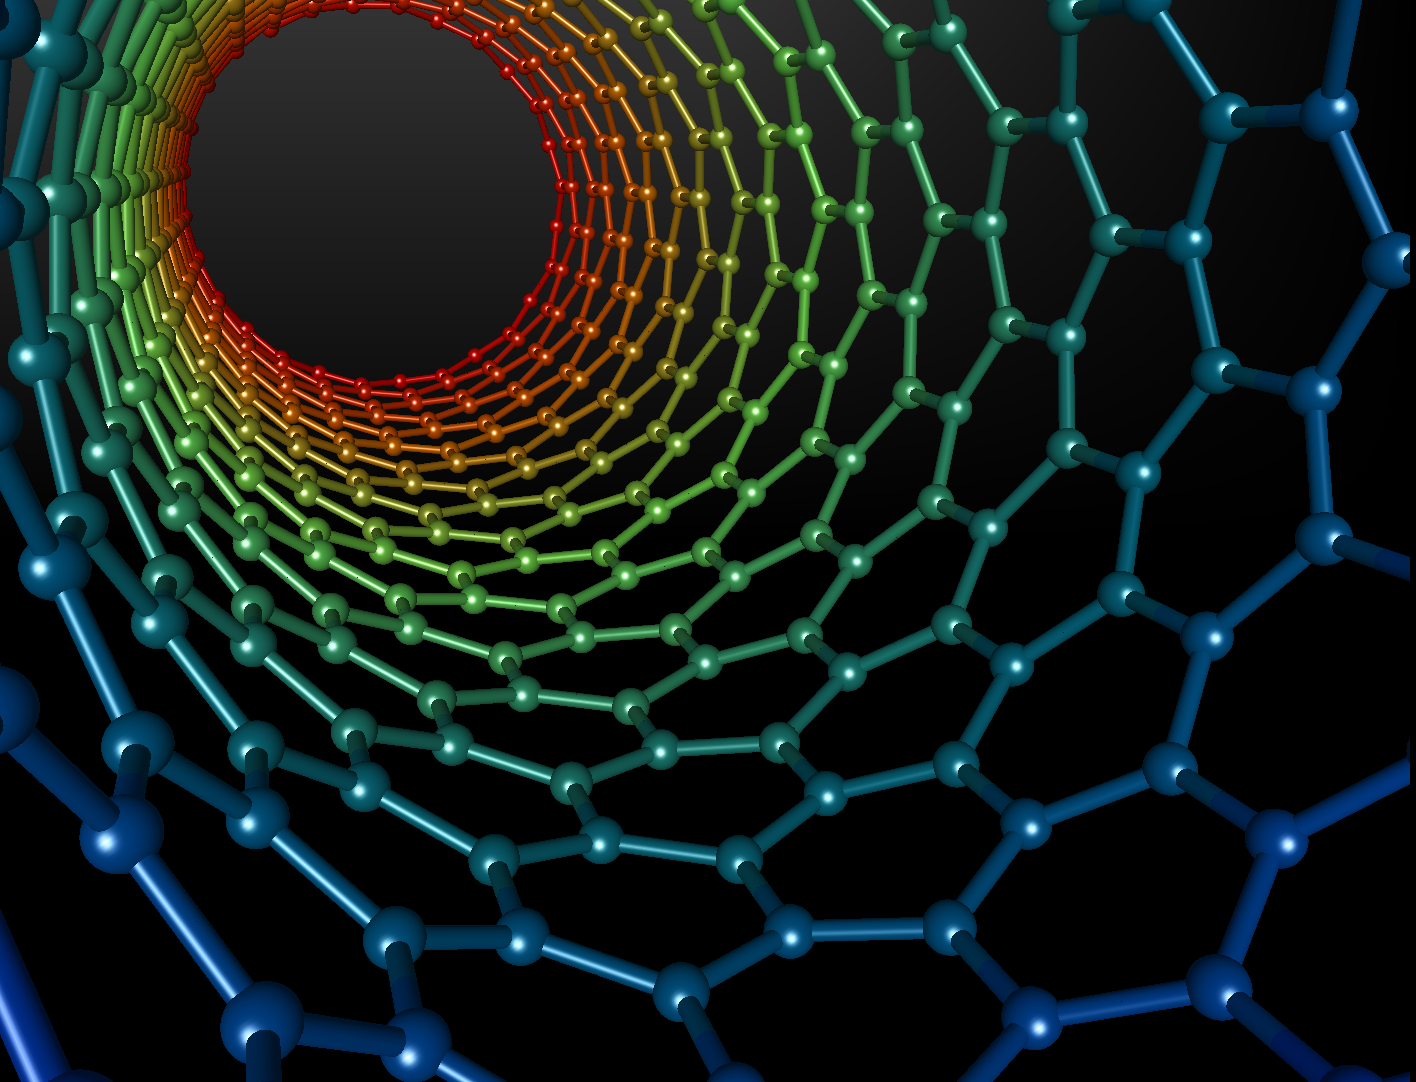  A carbon nanotube structure 